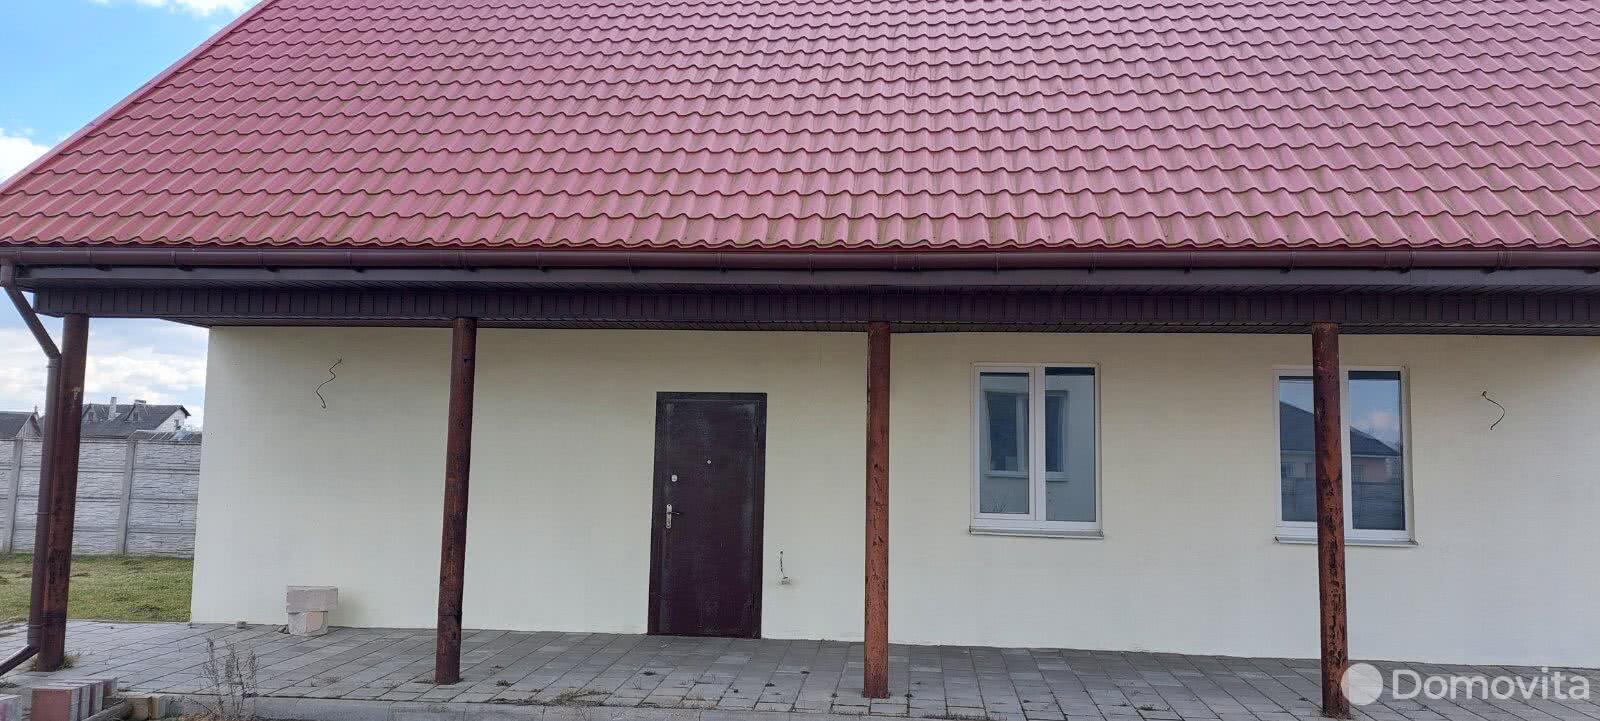 Продажа 2-этажного дома в Вязье, Могилевская область ул. Восточная, 89900USD, код 633862 - фото 3